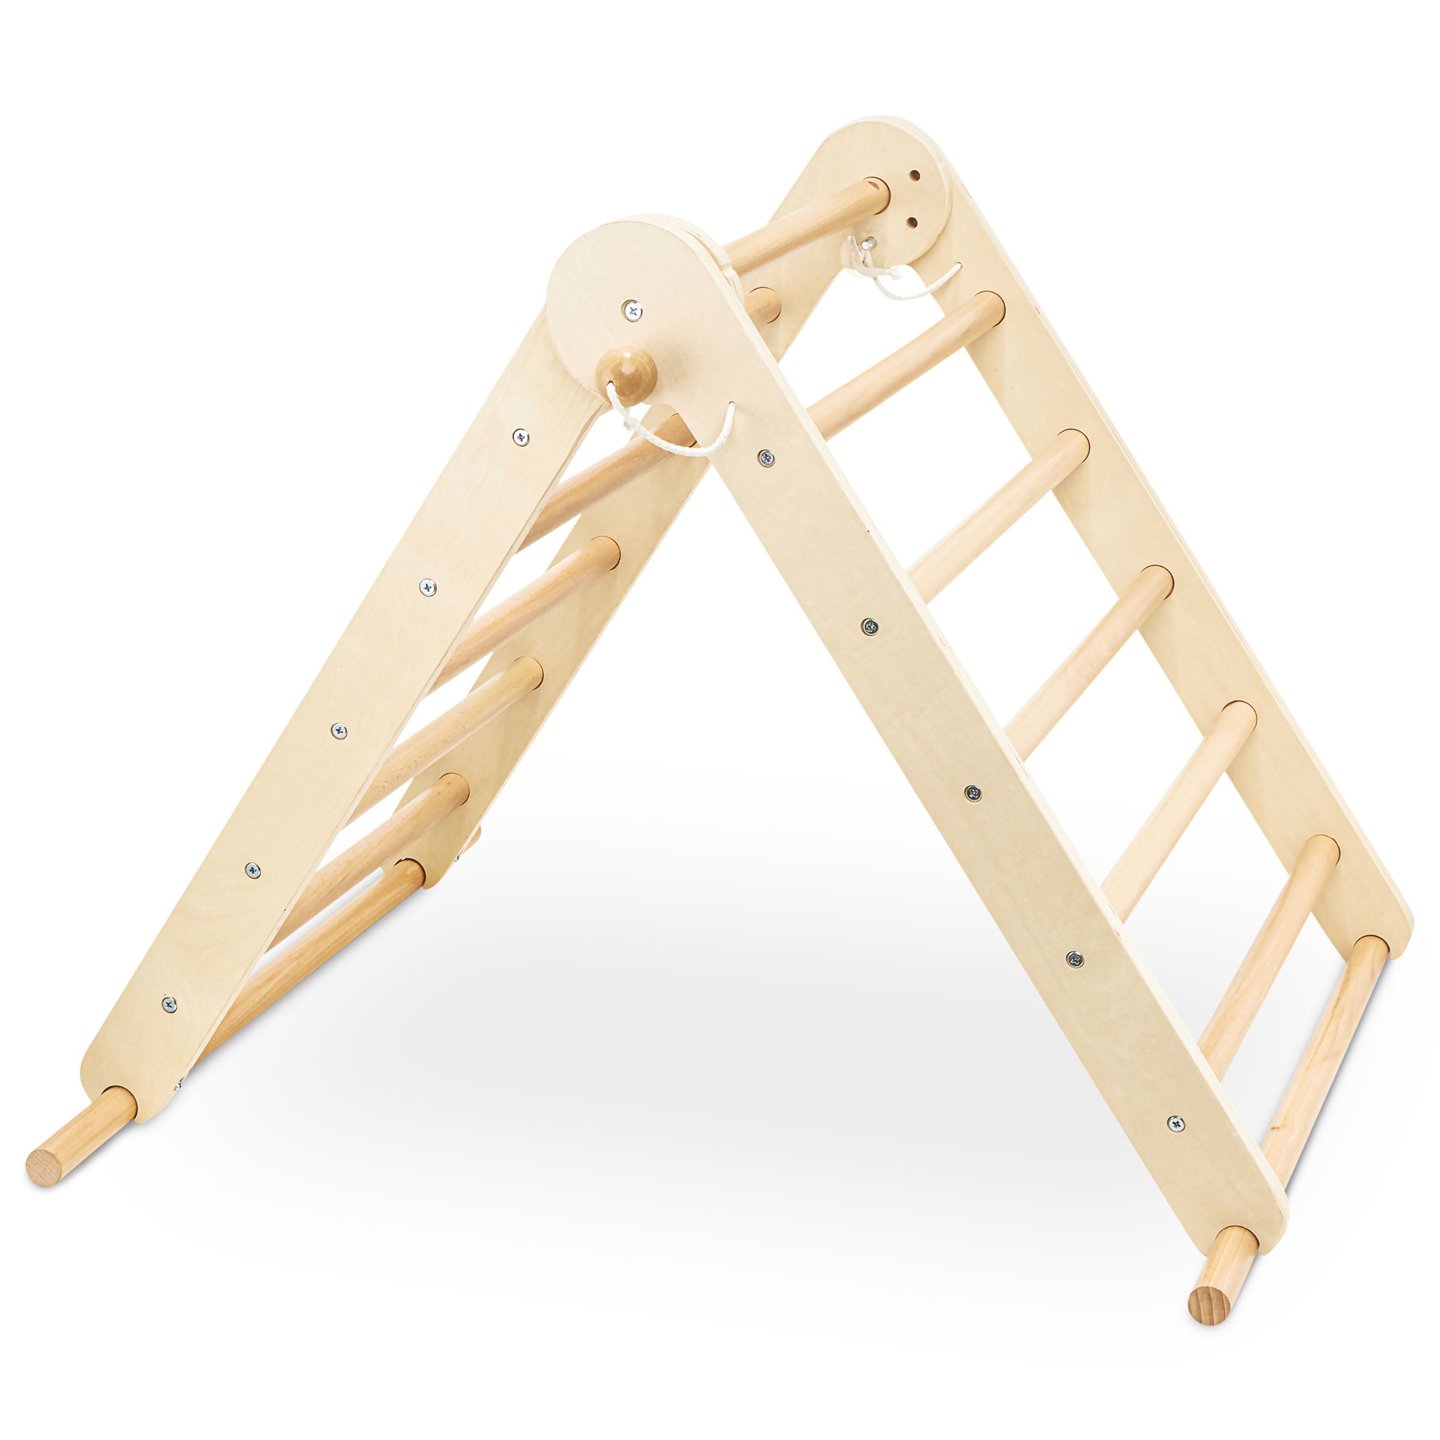 Drewniany, domowy plac zabaw dla dzieci - drabinka + ścianka wspinaczkowa + równoważnia do balansowania - trójkąt Piklera